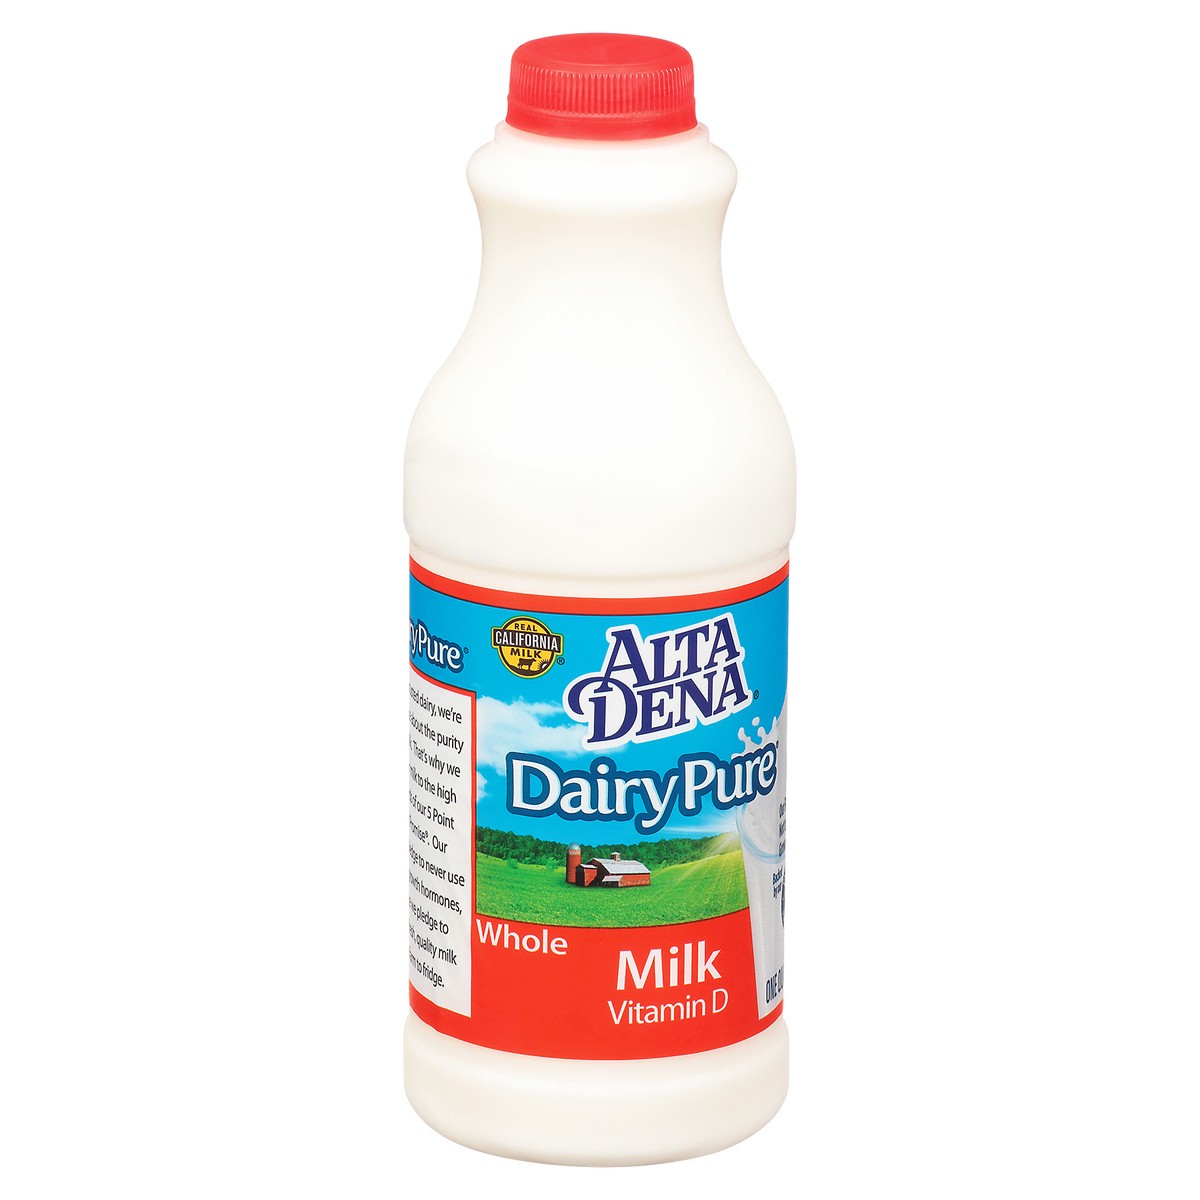 slide 4 of 9, Dairy Pure Vitamin D Milk, Whole Milk Bottle - 1 Quart, 1 qt